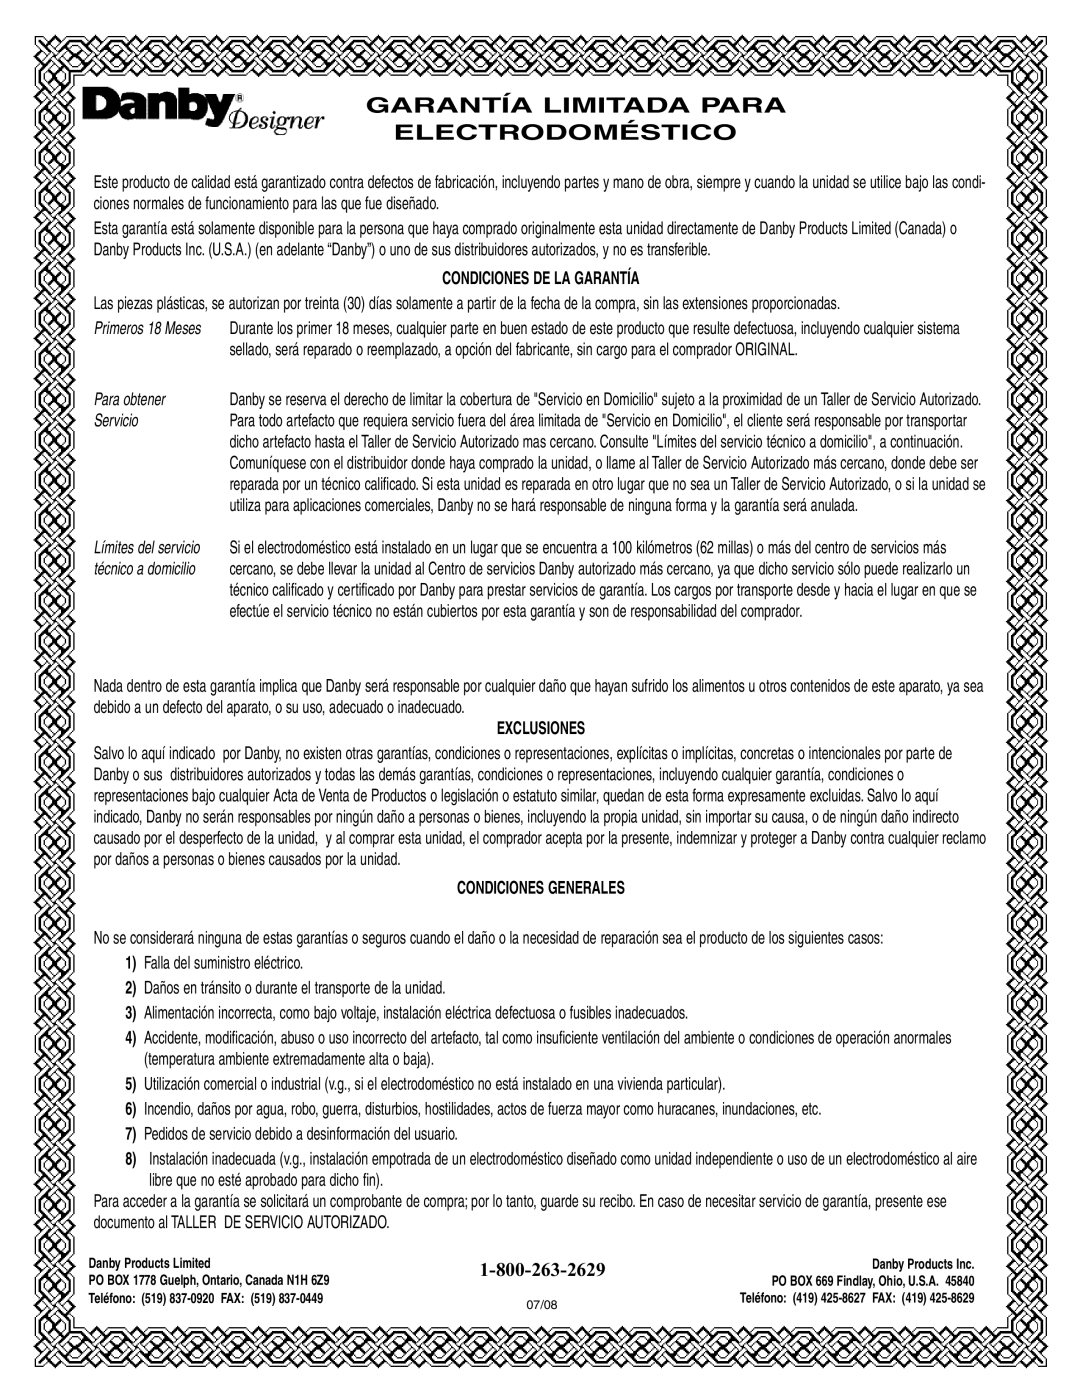 Danby DFF311WDD manual Condiciones De La Garantía, Para obtener, Servicio, Exclusiones, Condiciones Generales 